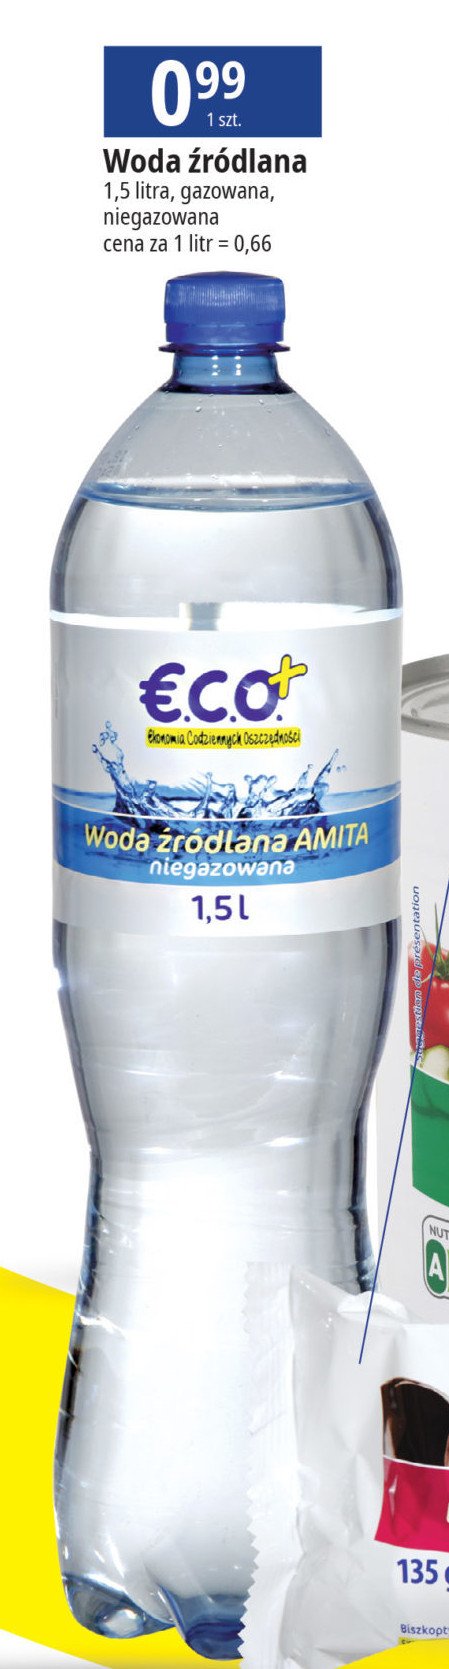 Woda gazowana Eco+ promocja